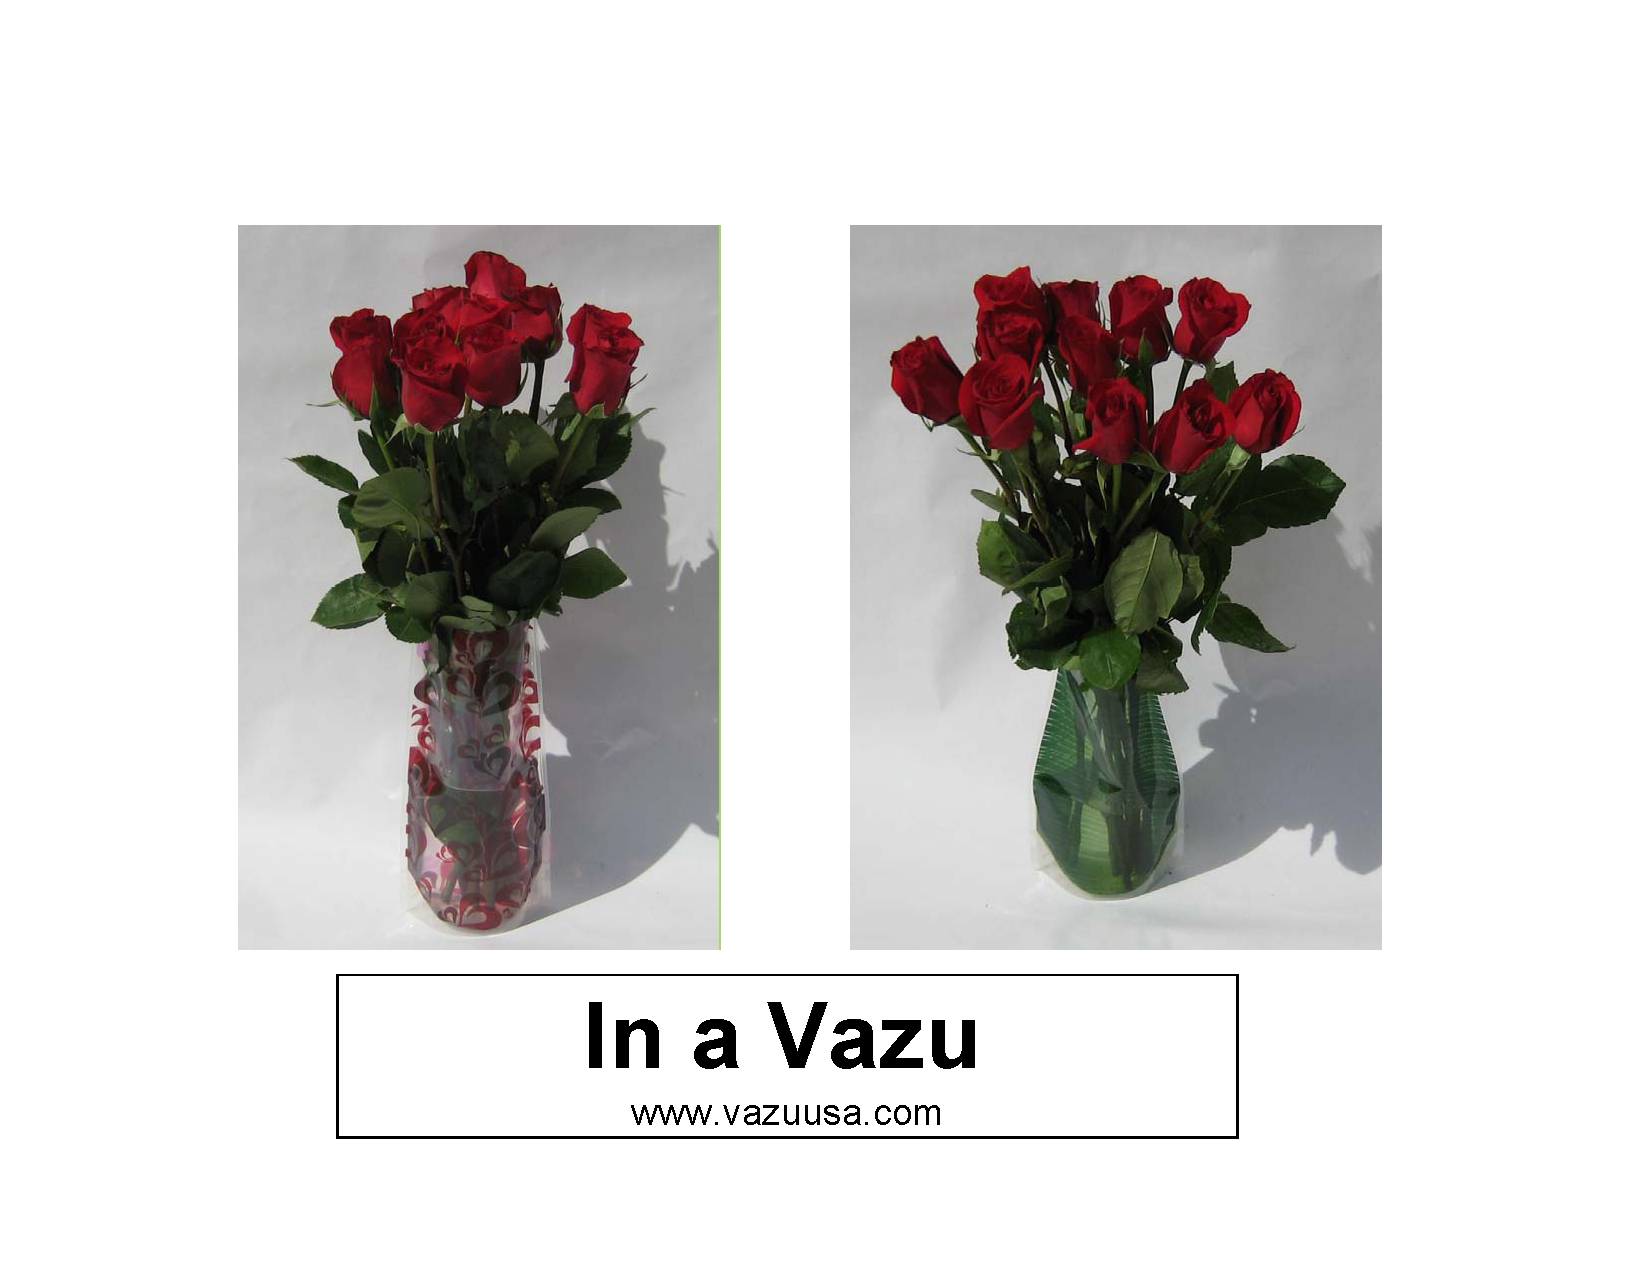 Roses in a Vazu